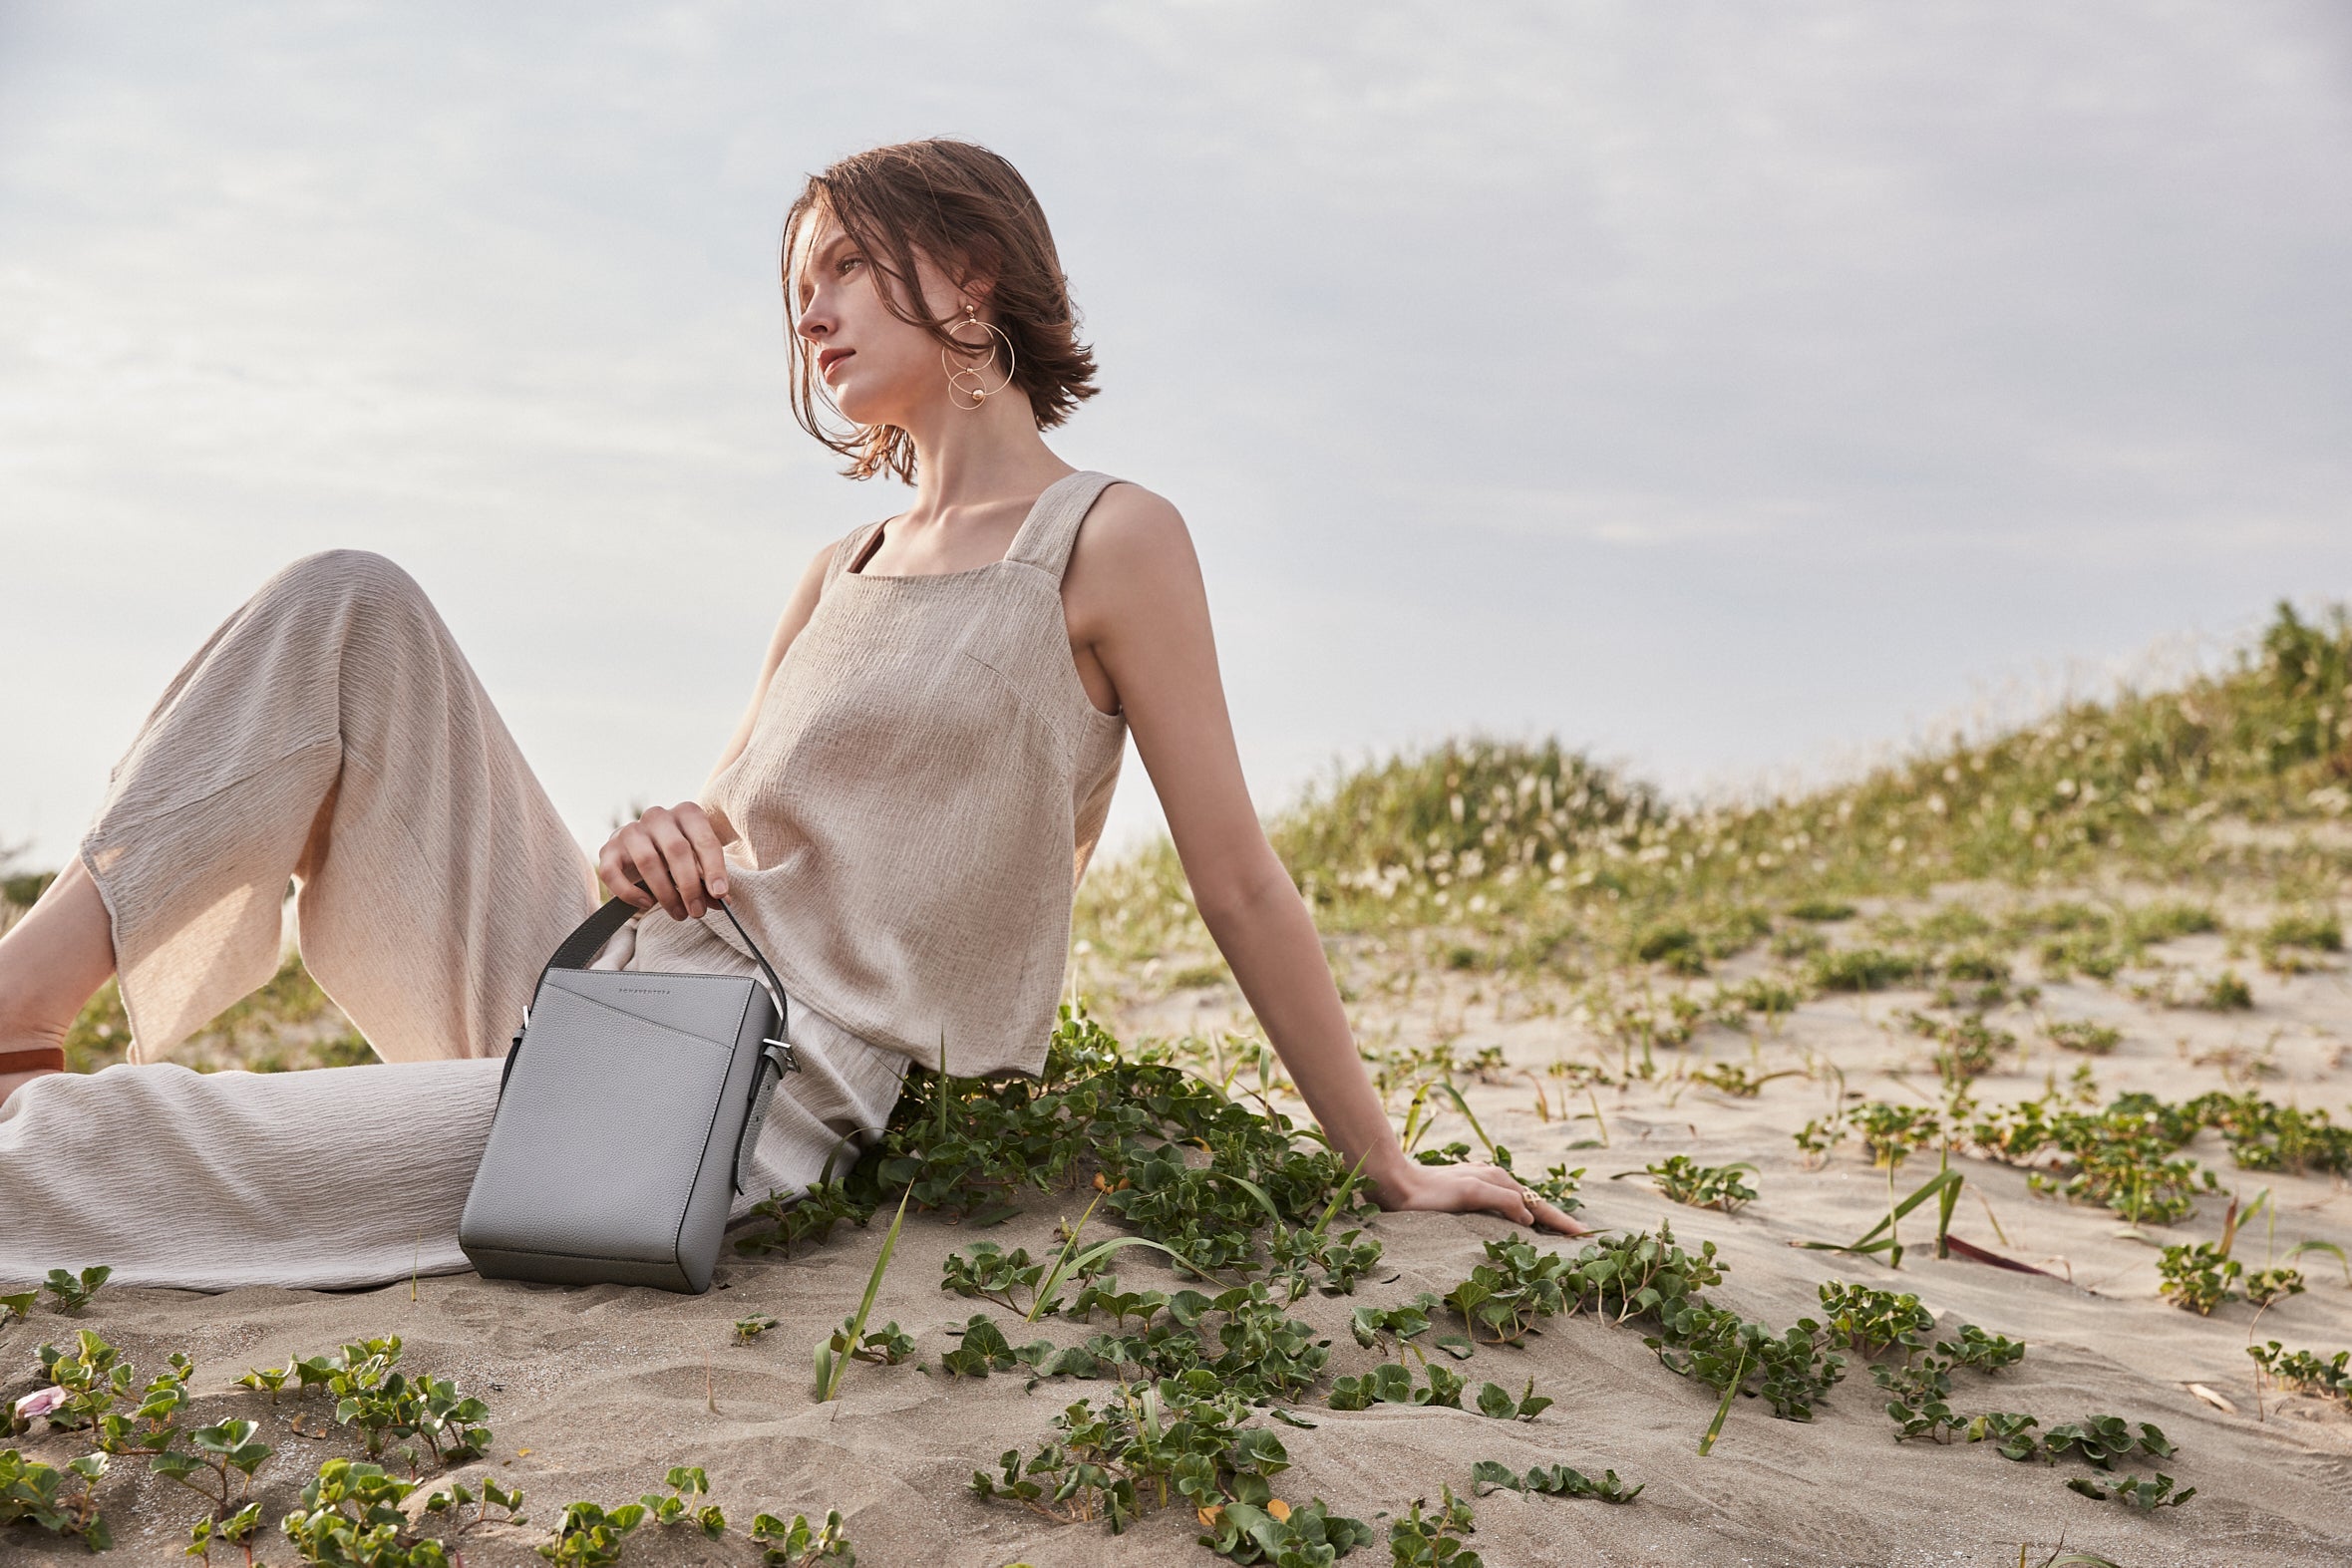 Una donna elegante e attenta all'ambiente porta in spiaggia una borsa in pelle sostenibile di BONAVENTURA.